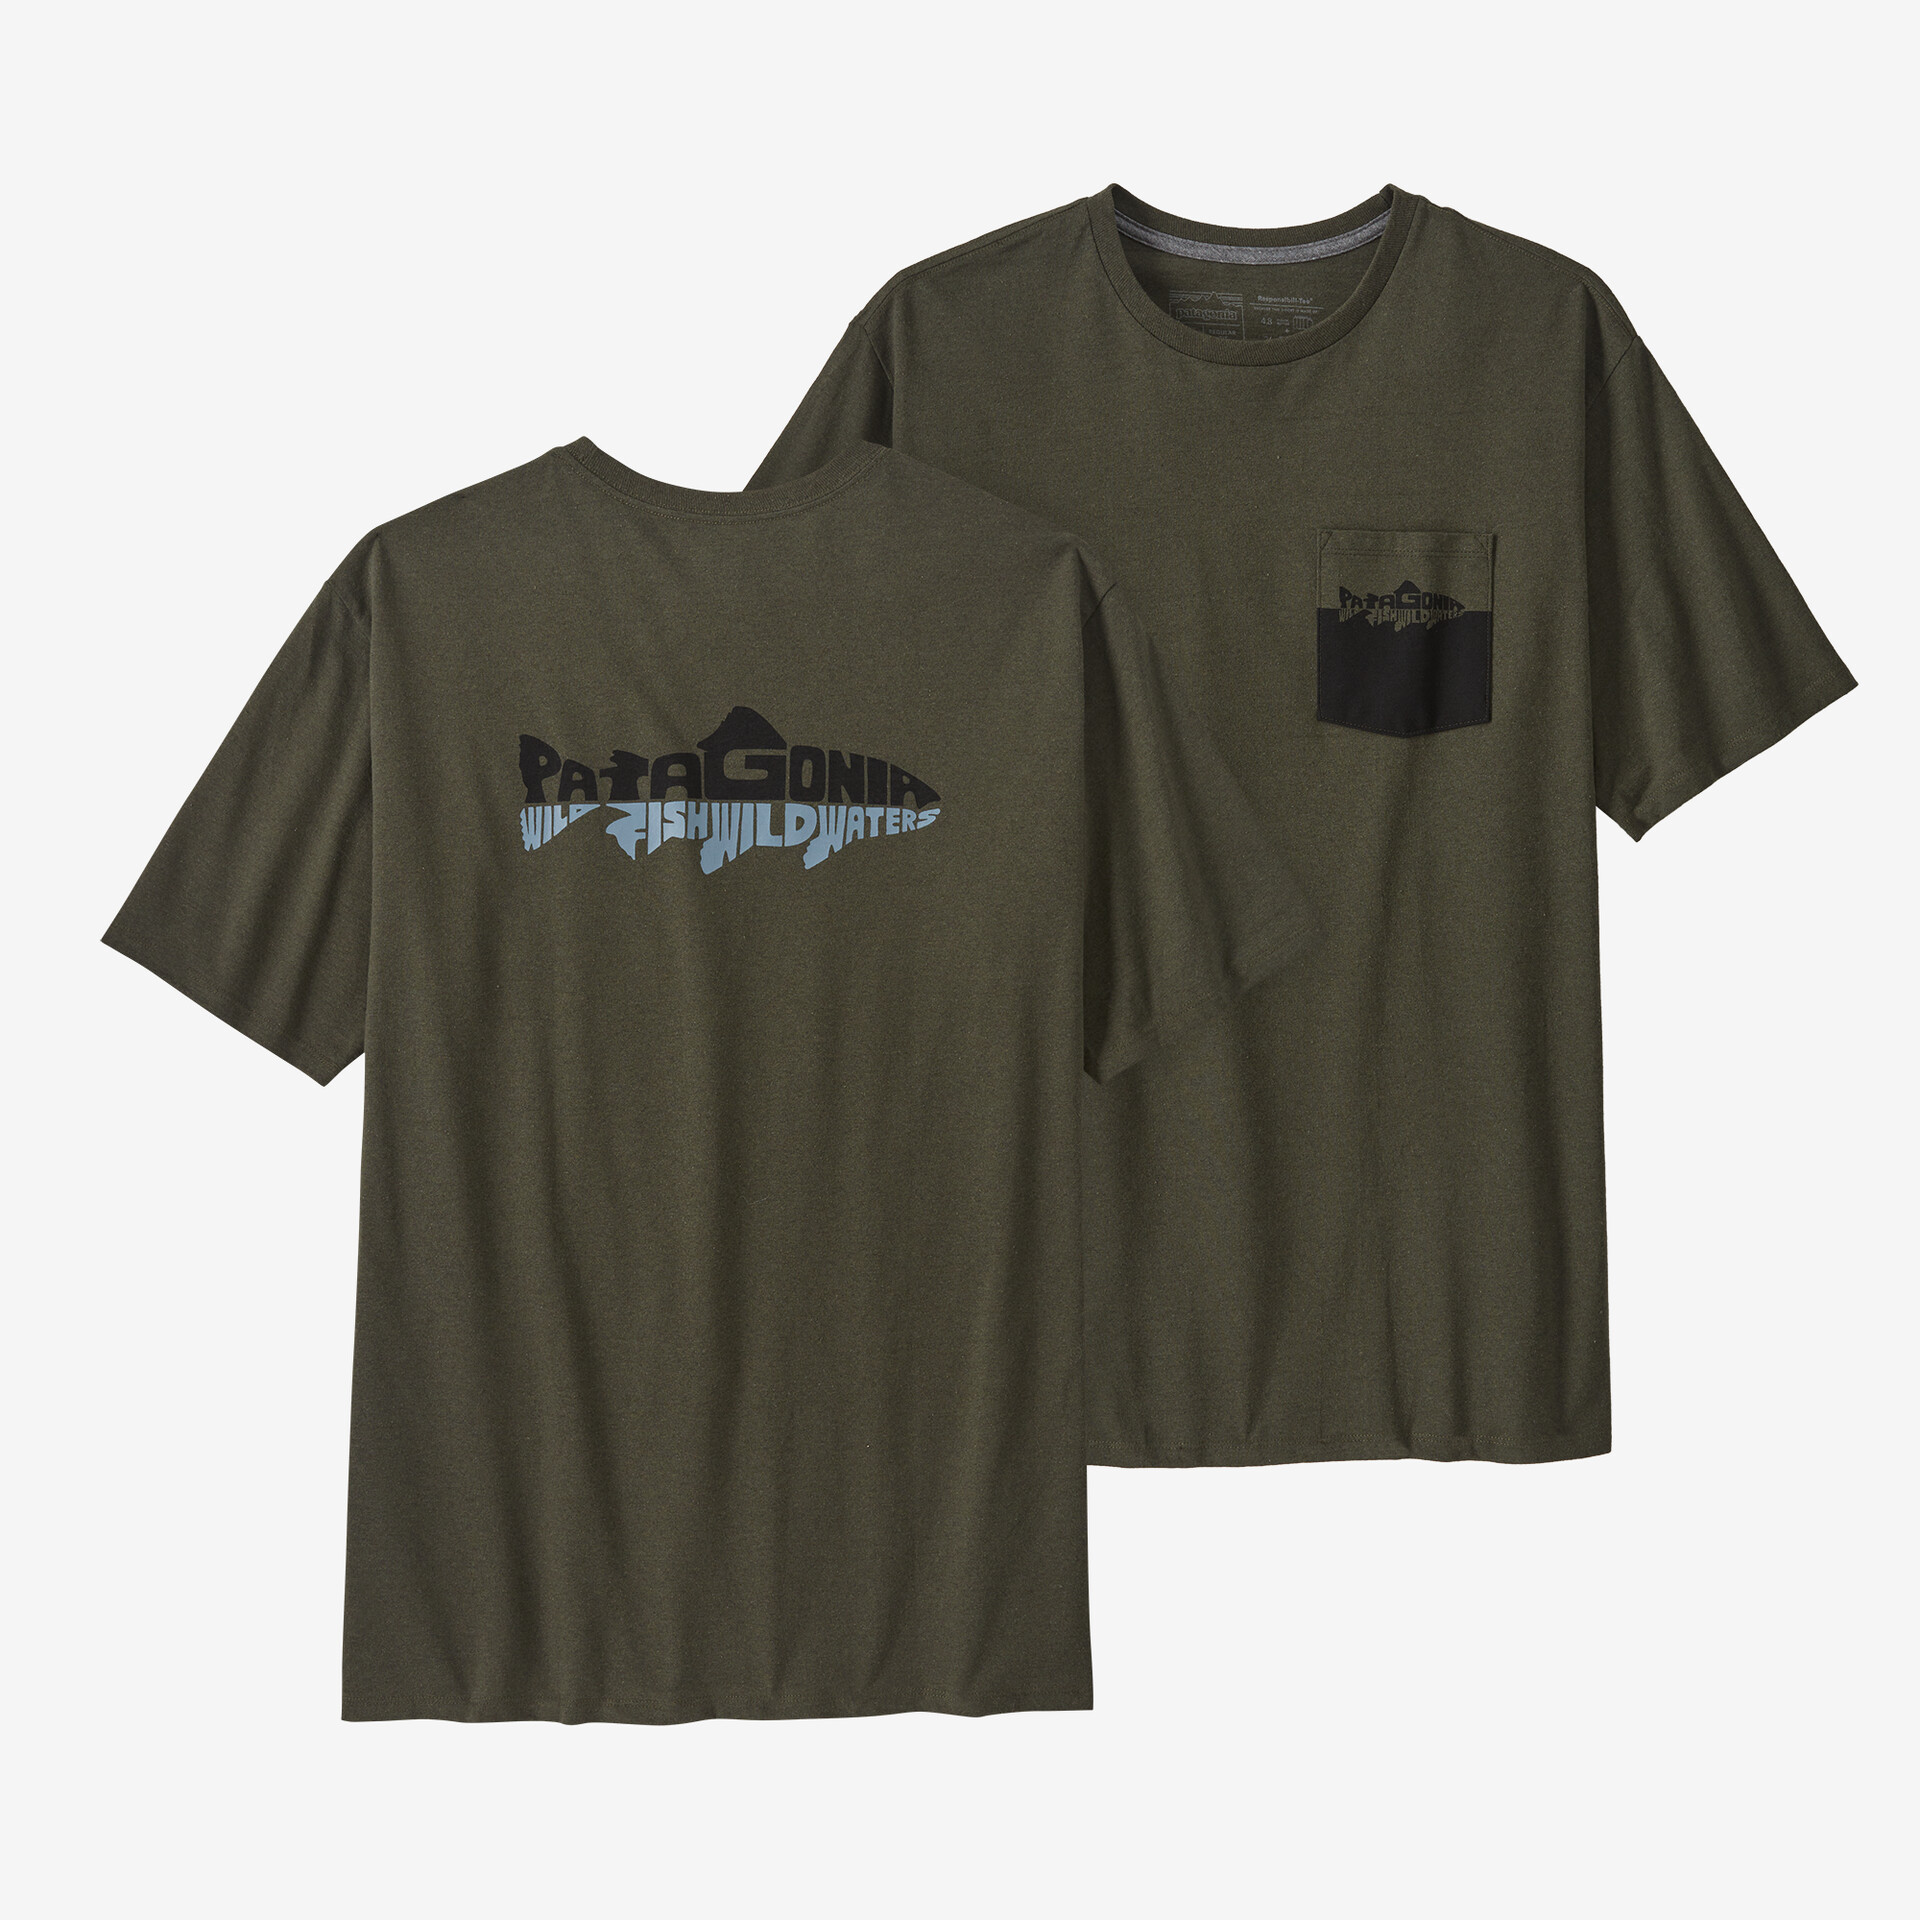 Мужская ответственная футболка с карманом Wild Waterline Patagonia, цвет Basin Green мужская ответственная футболка с логотипом и карманом patagonia черный